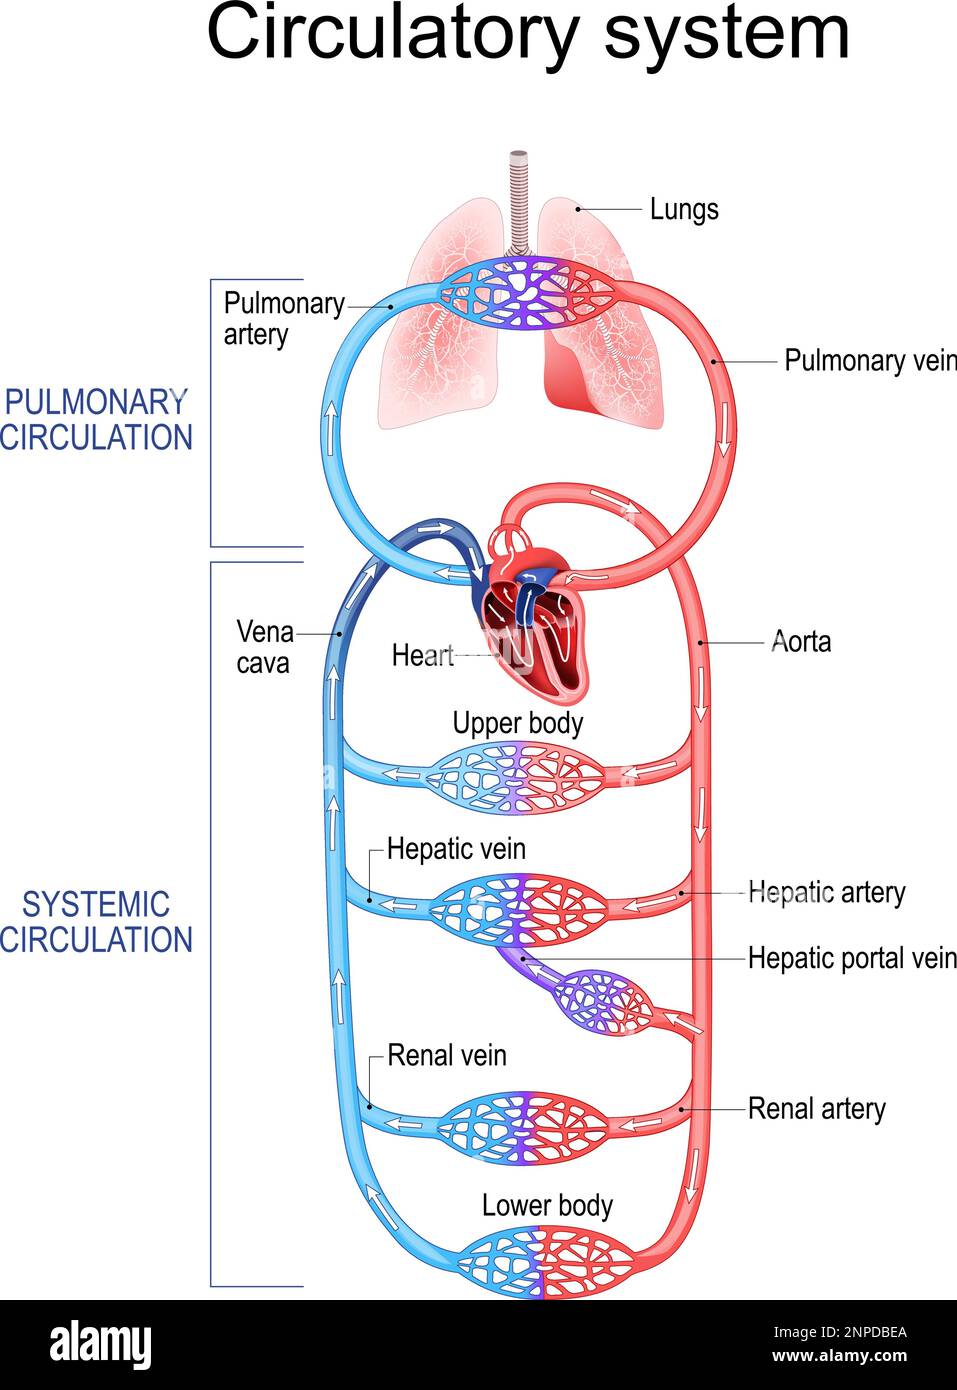 Kreislaufsystem. Menschliches Blut. Lungenzirkulation in der Lunge und systemischer Kreislauf in der Nierenarterie, hepatische Pfortader, Aorta, Vena Cava Stock Vektor